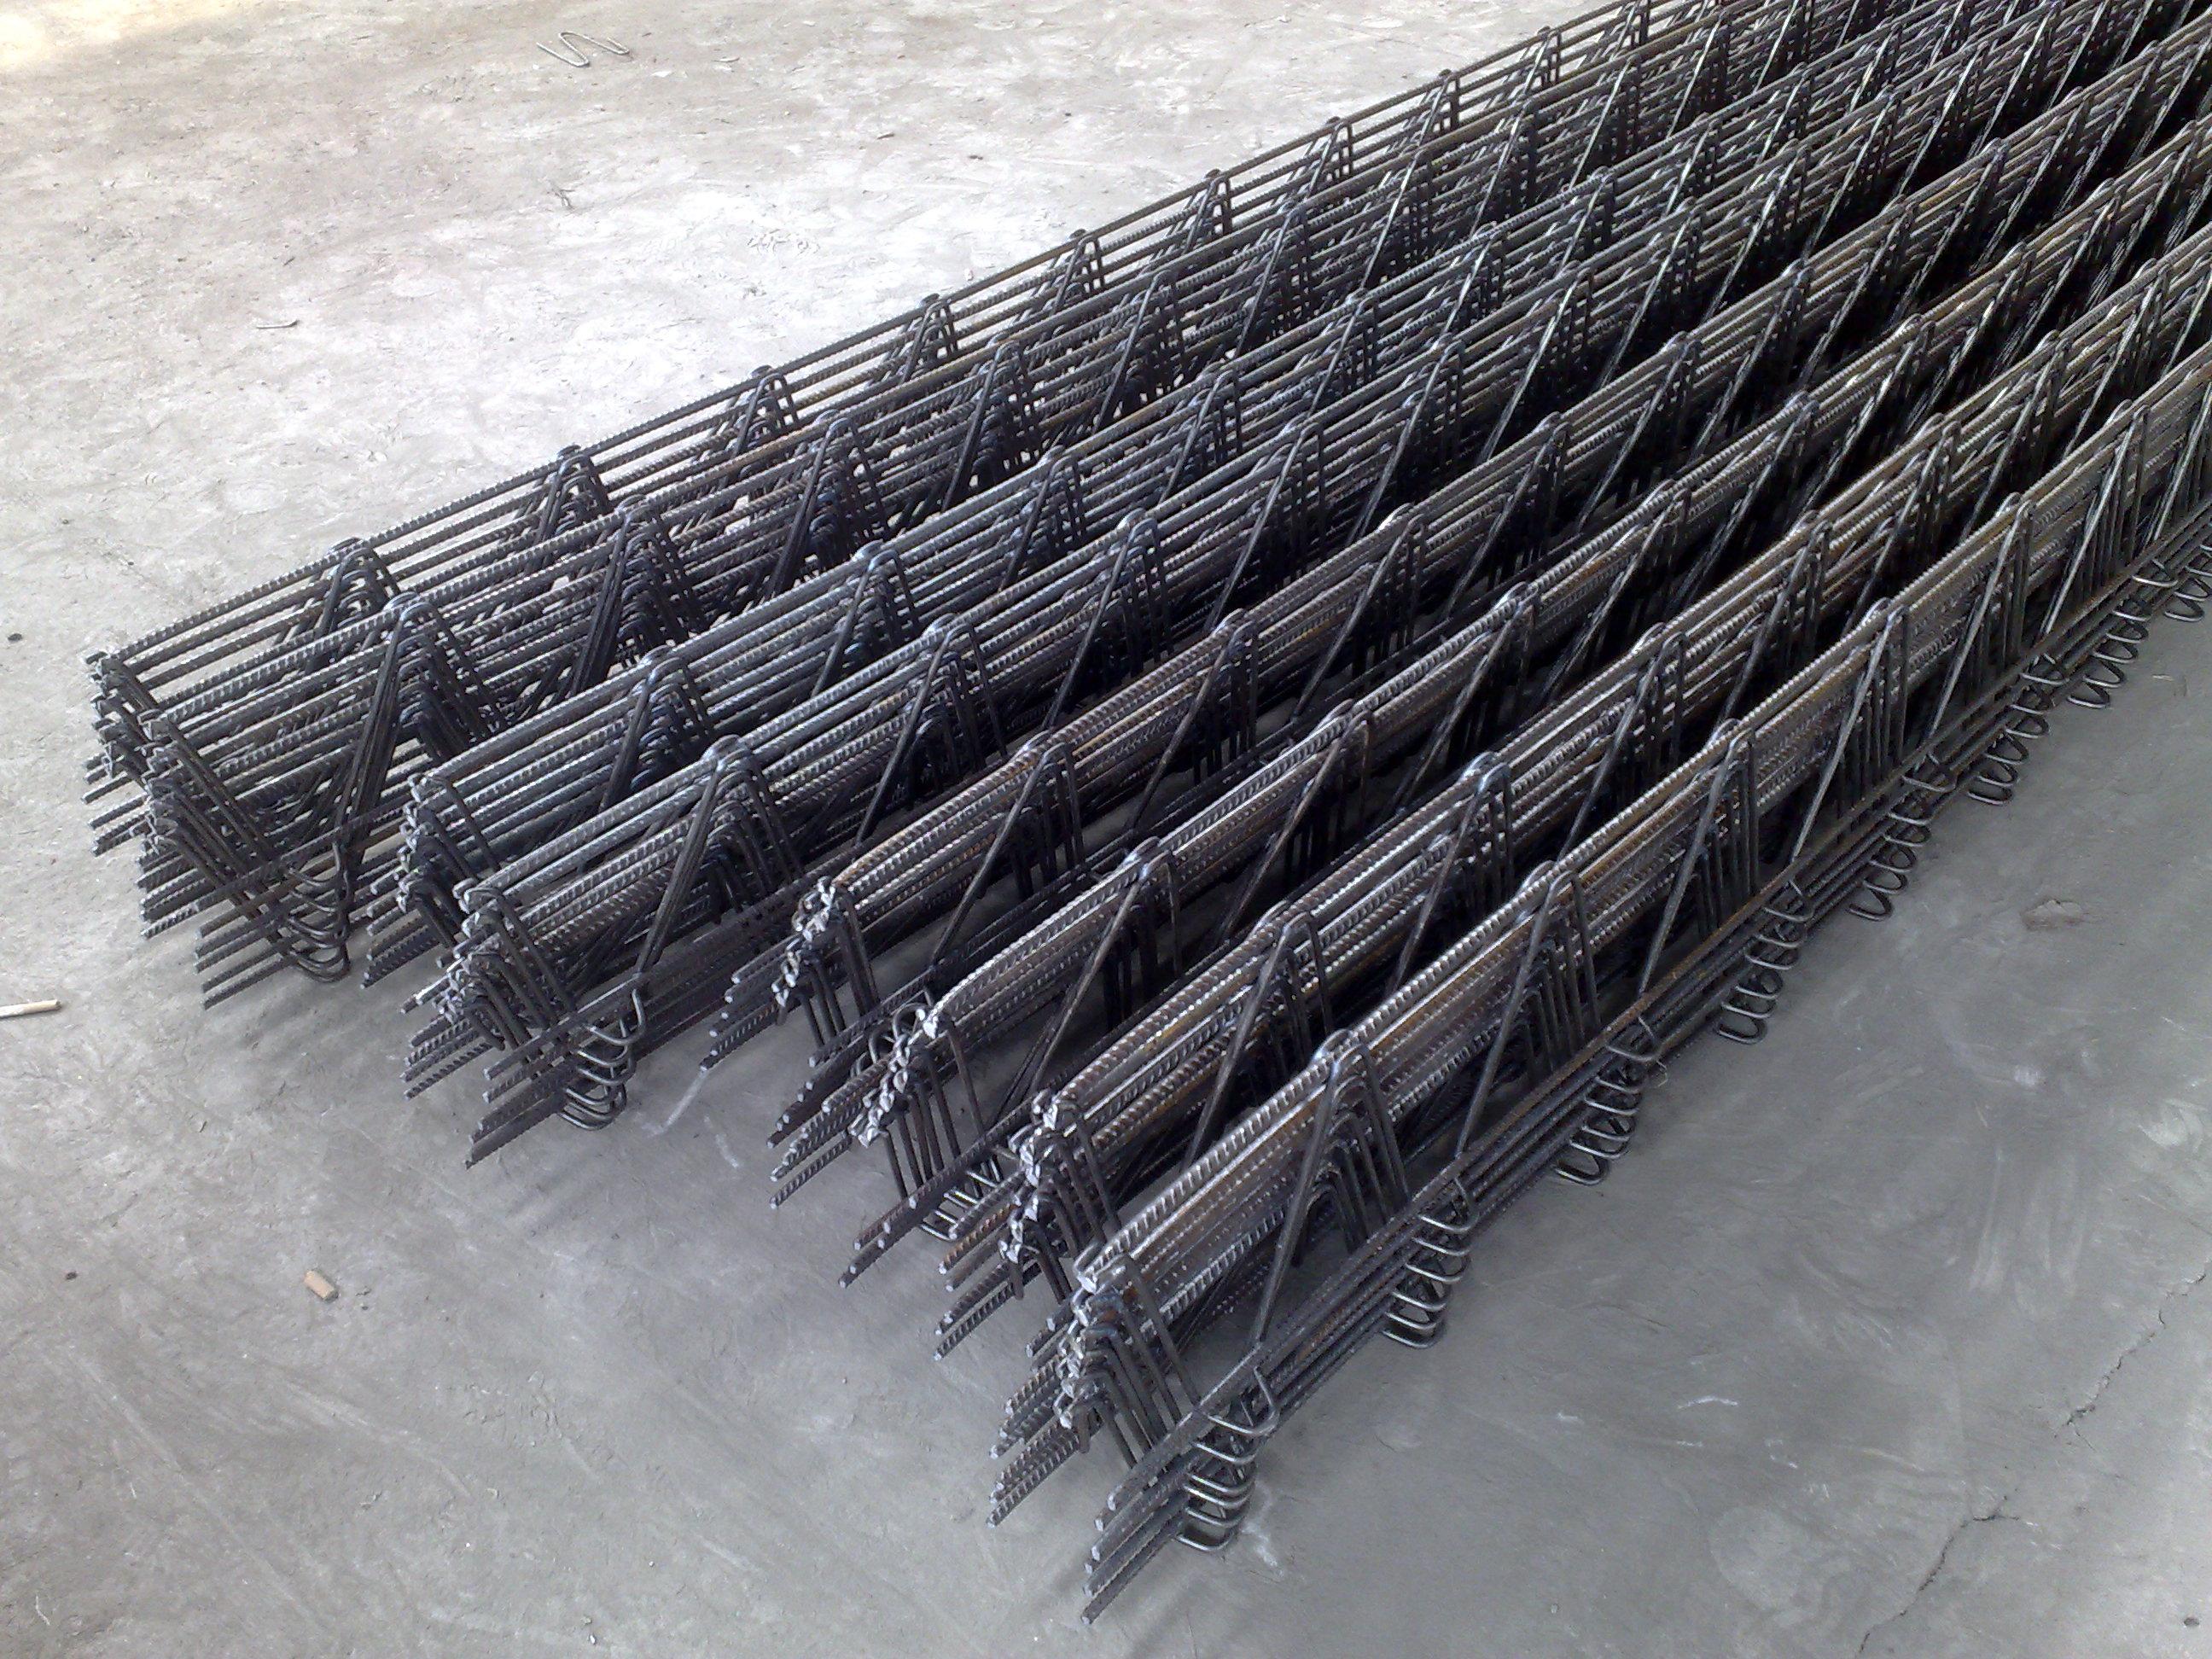 供应杭州安美久公司钢筋桁架TD系列板